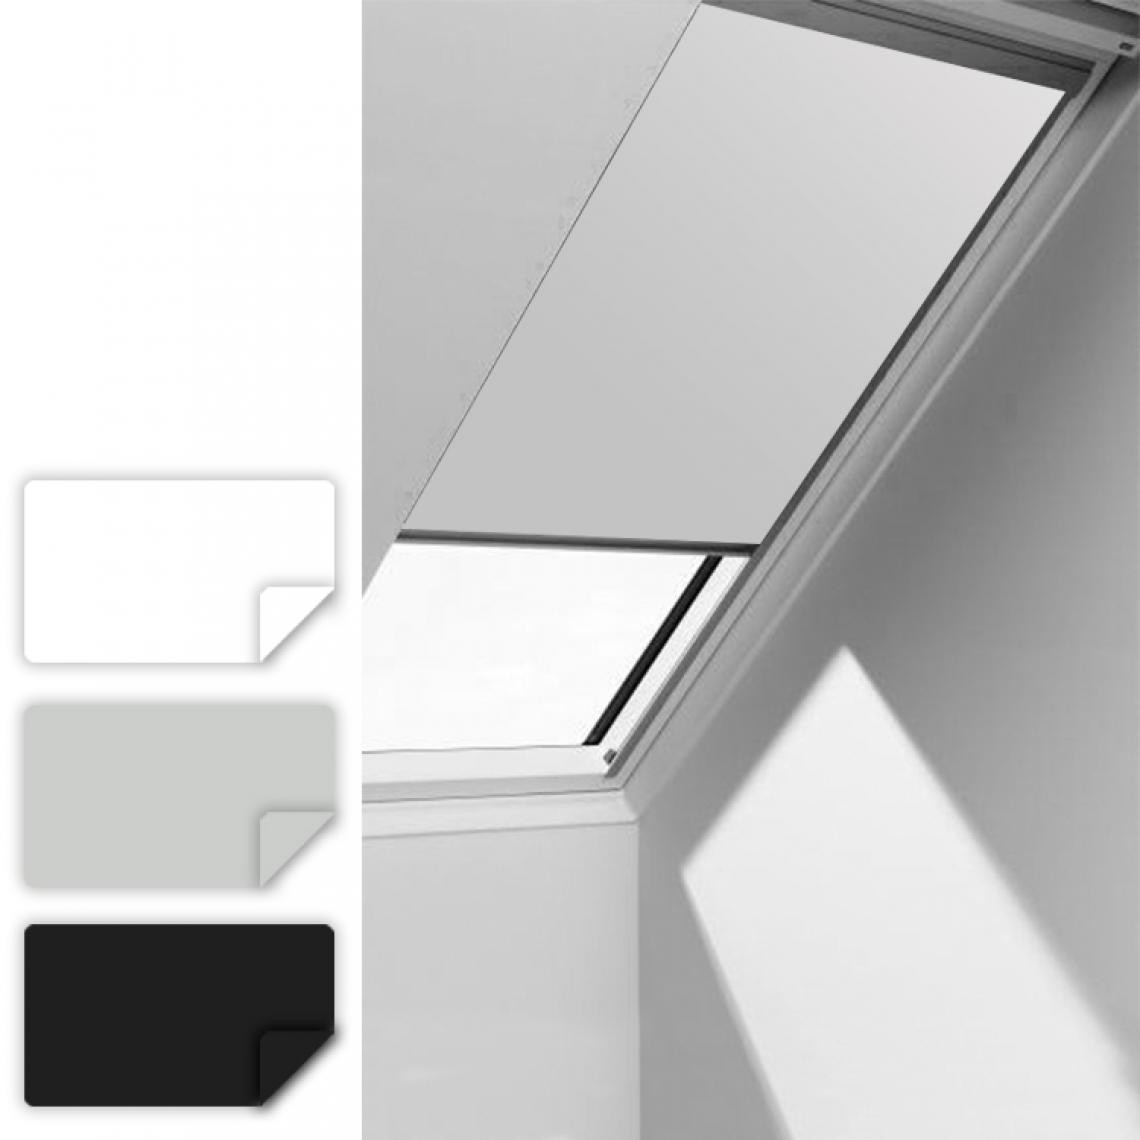 Einfeben - Store à enrouleur pour fenêtre de toit F06 pour Velux Skylight, store à enrouleur thermique gris classique, 49.3*94cm - Volet roulant